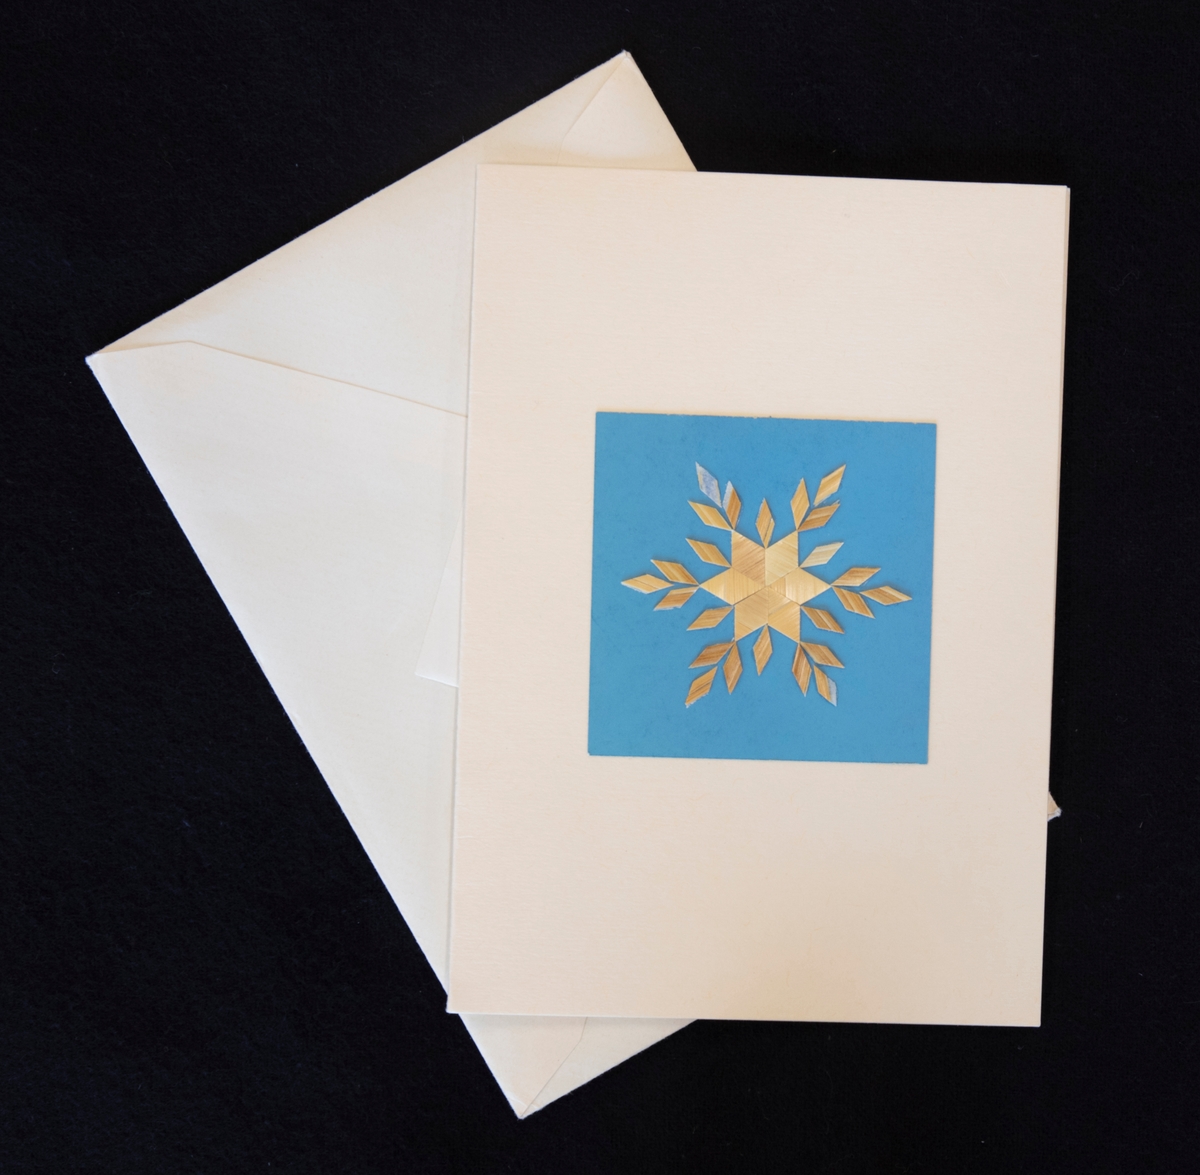 Julkort där motivet är gjorda av halm. Stjärna med blå bakgrund.

Ingår i en samling av tre julkort med halmmotiv mot olika bakgrundsfärger. Ingår i halmdokumentationen 1983.